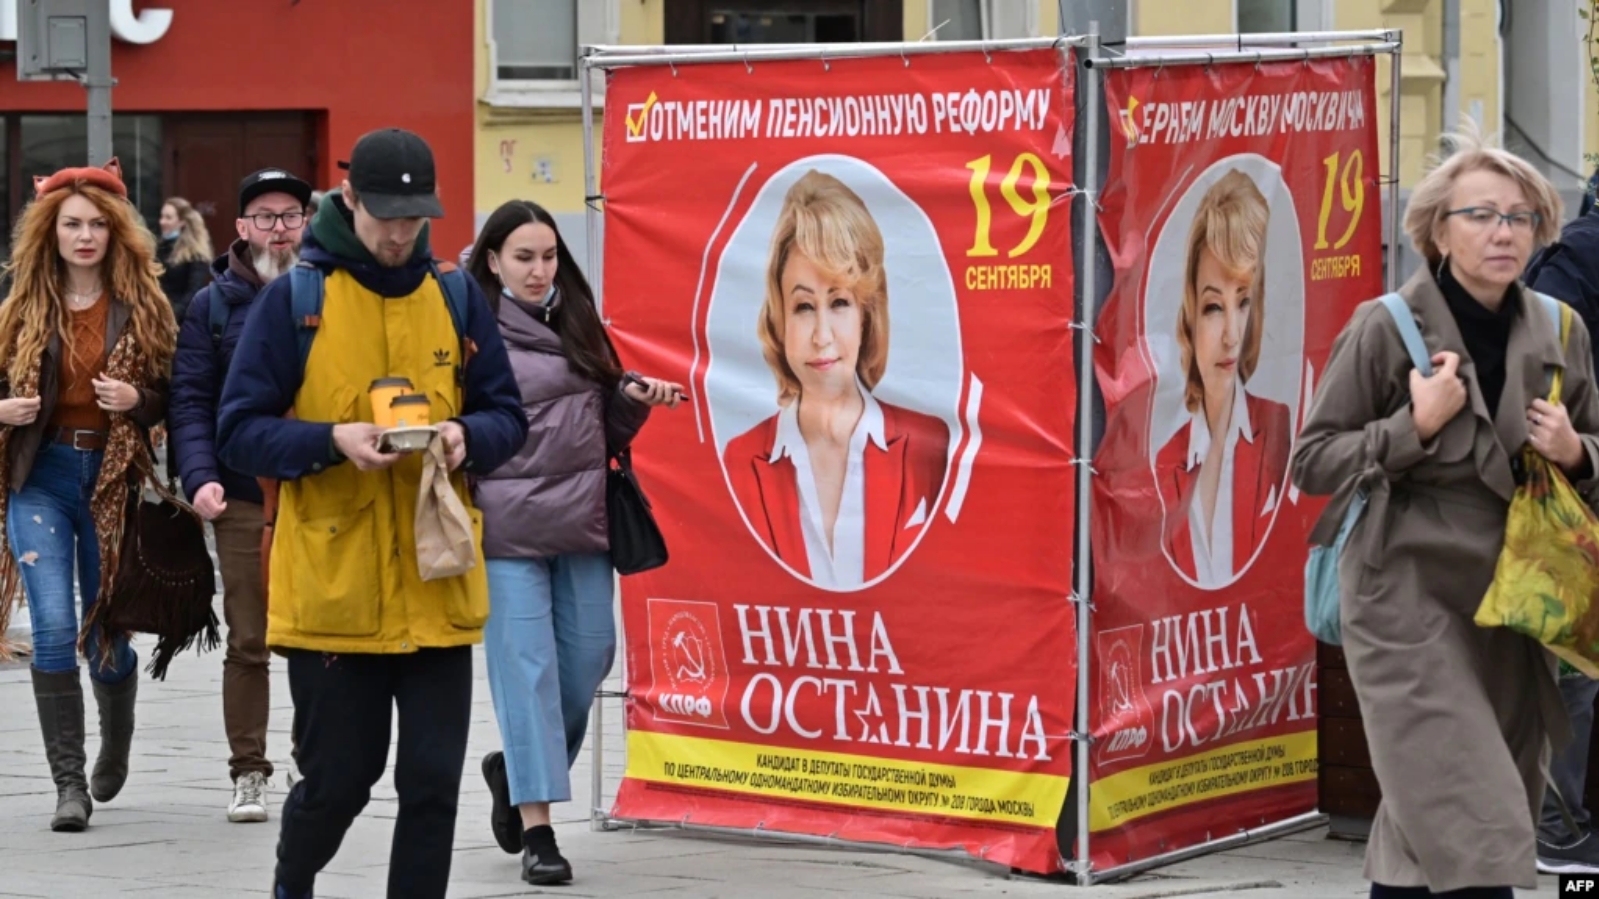 مواطنون يمرون بجانب ملصق لحملة مرشح الحزب الشيوعي الروسي في موسكو. بتاريخ 16 أيلول/ سبتمبر 2021.